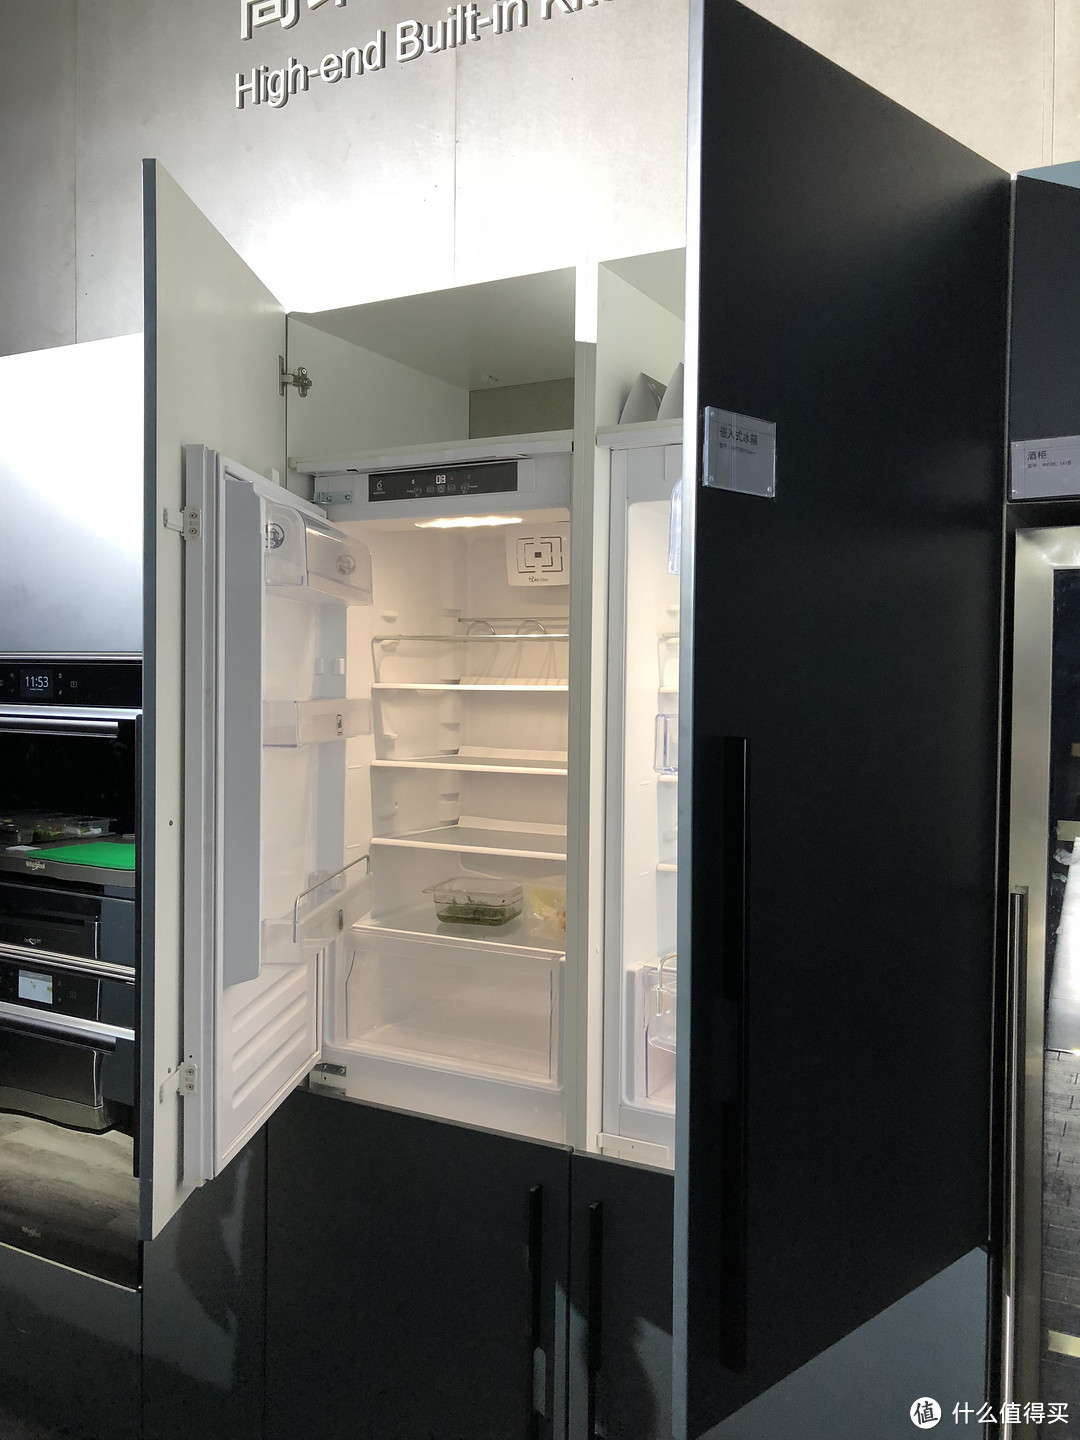 嵌入式冰箱值不值得买？嵌入式冰箱的五种偏见，你在哪里扎了根？